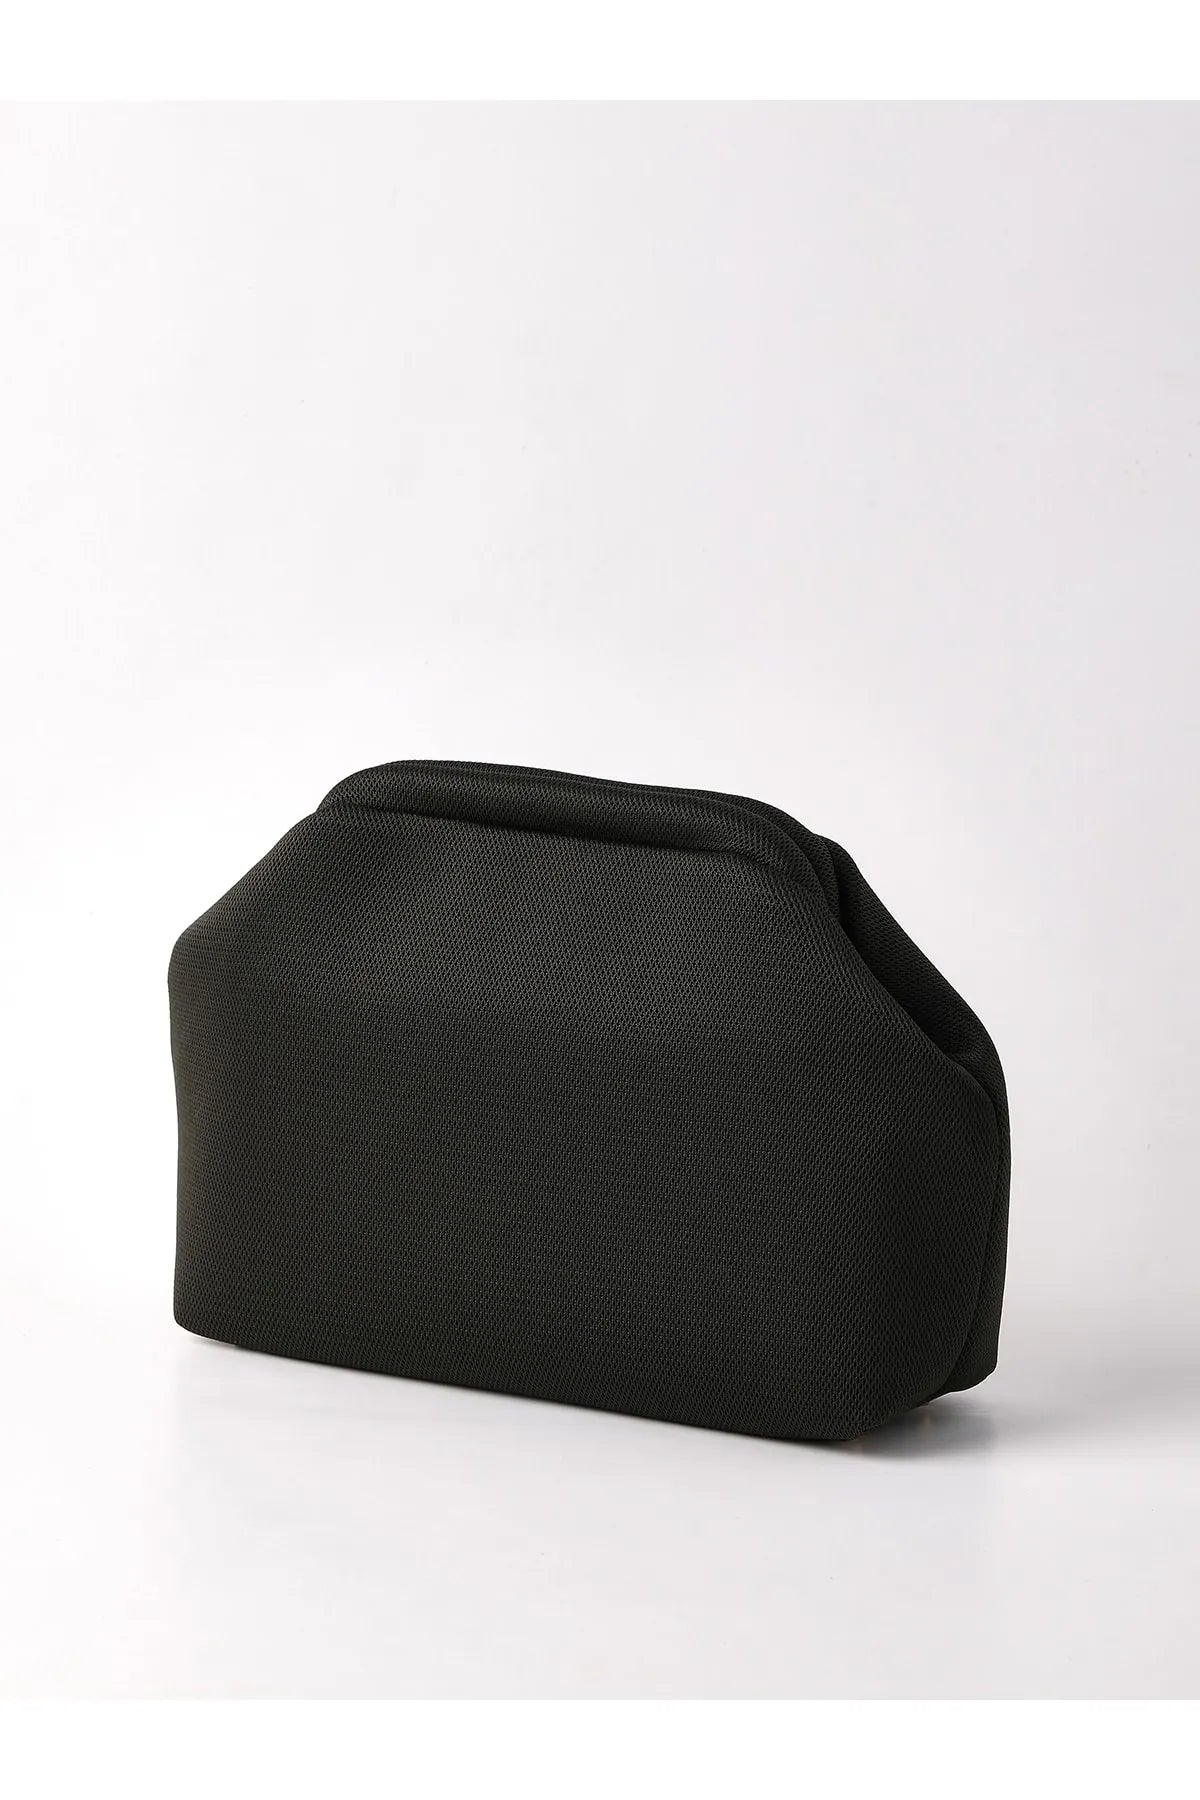 Khaki Clutch Handbag clutch LUNARITY GARAGE   